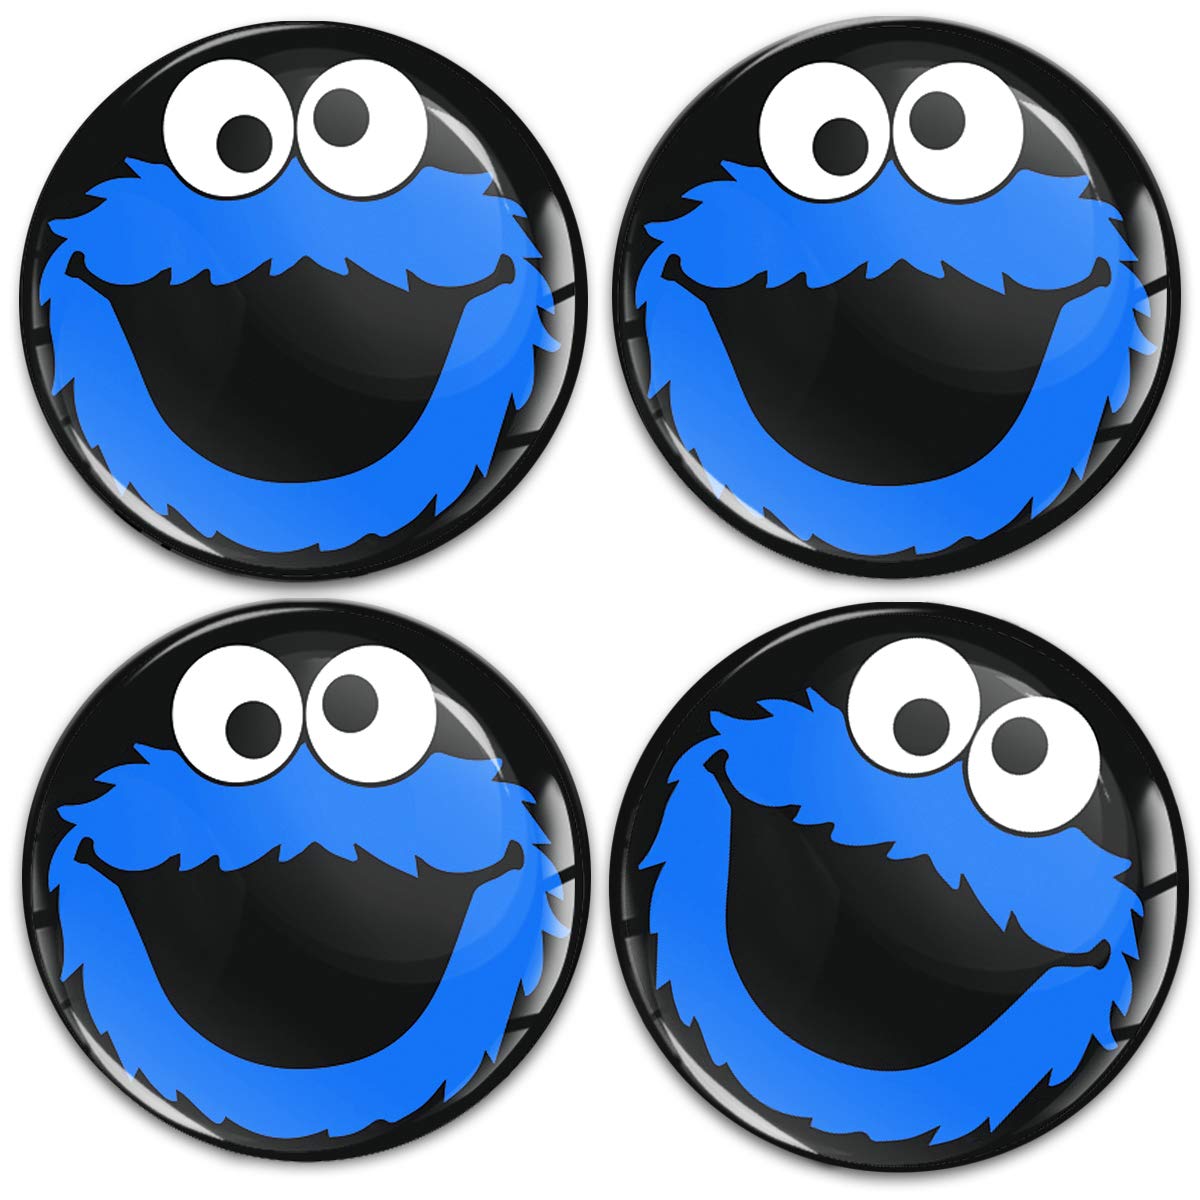 SkinoEu Aufkleber Autoaufkleber für Radkappen Nabenkappen Nabendeckel Radnabendeckel Rad-Aufkleber 55mm Schwarz Blau Elmo Cookie Monster A 5855 von Skino